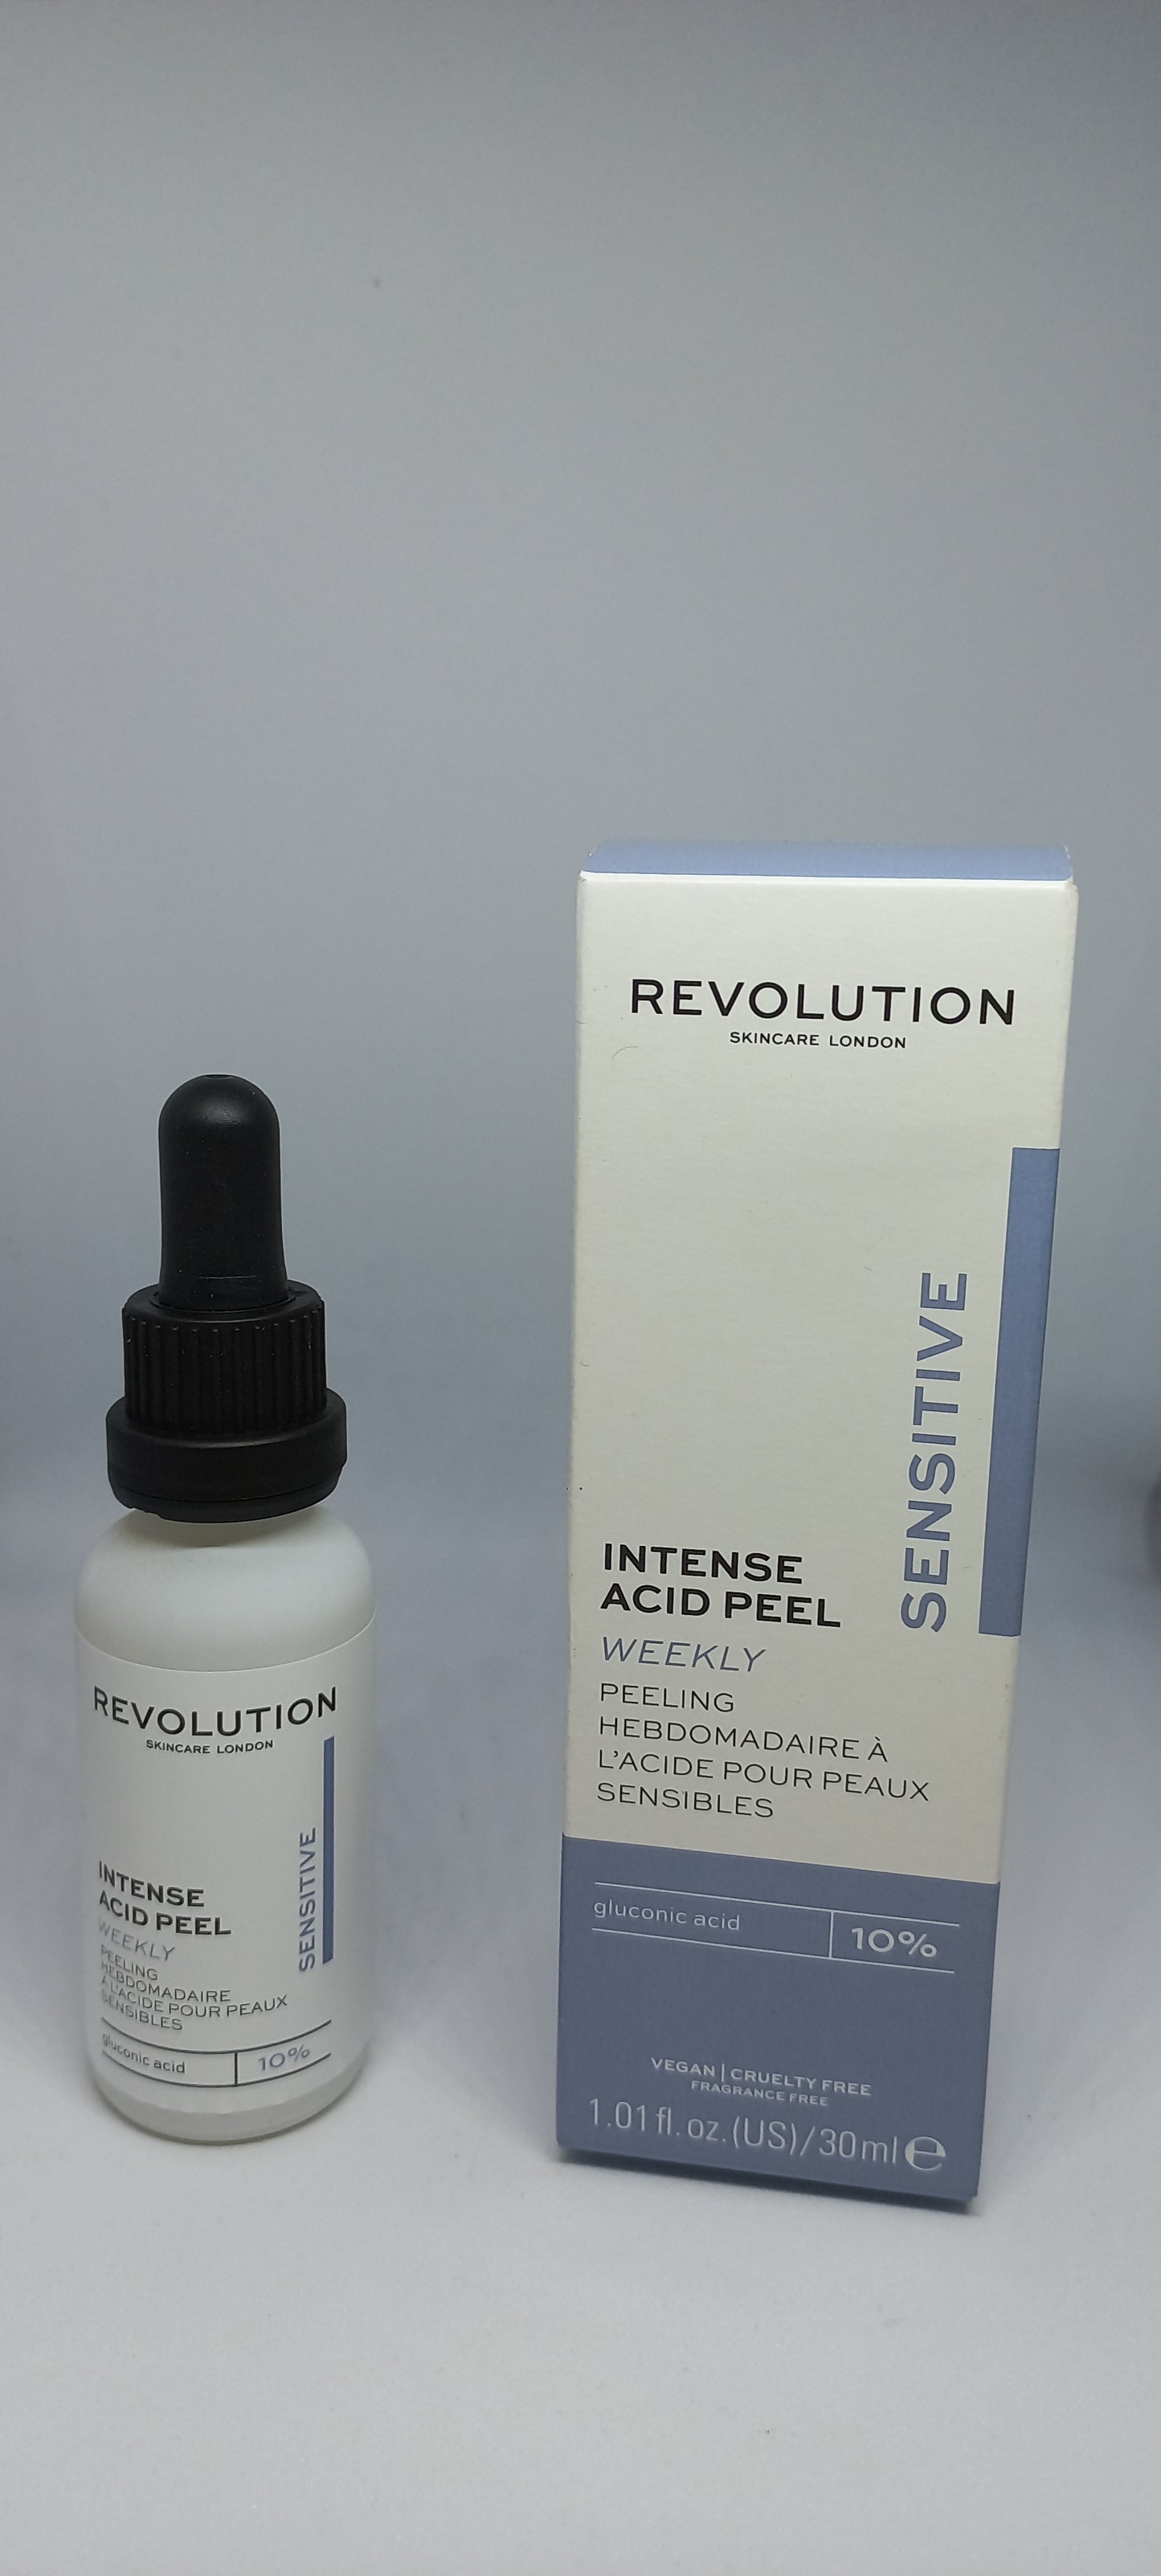 Revolution  intense acid peel weekly peau sensible 10%